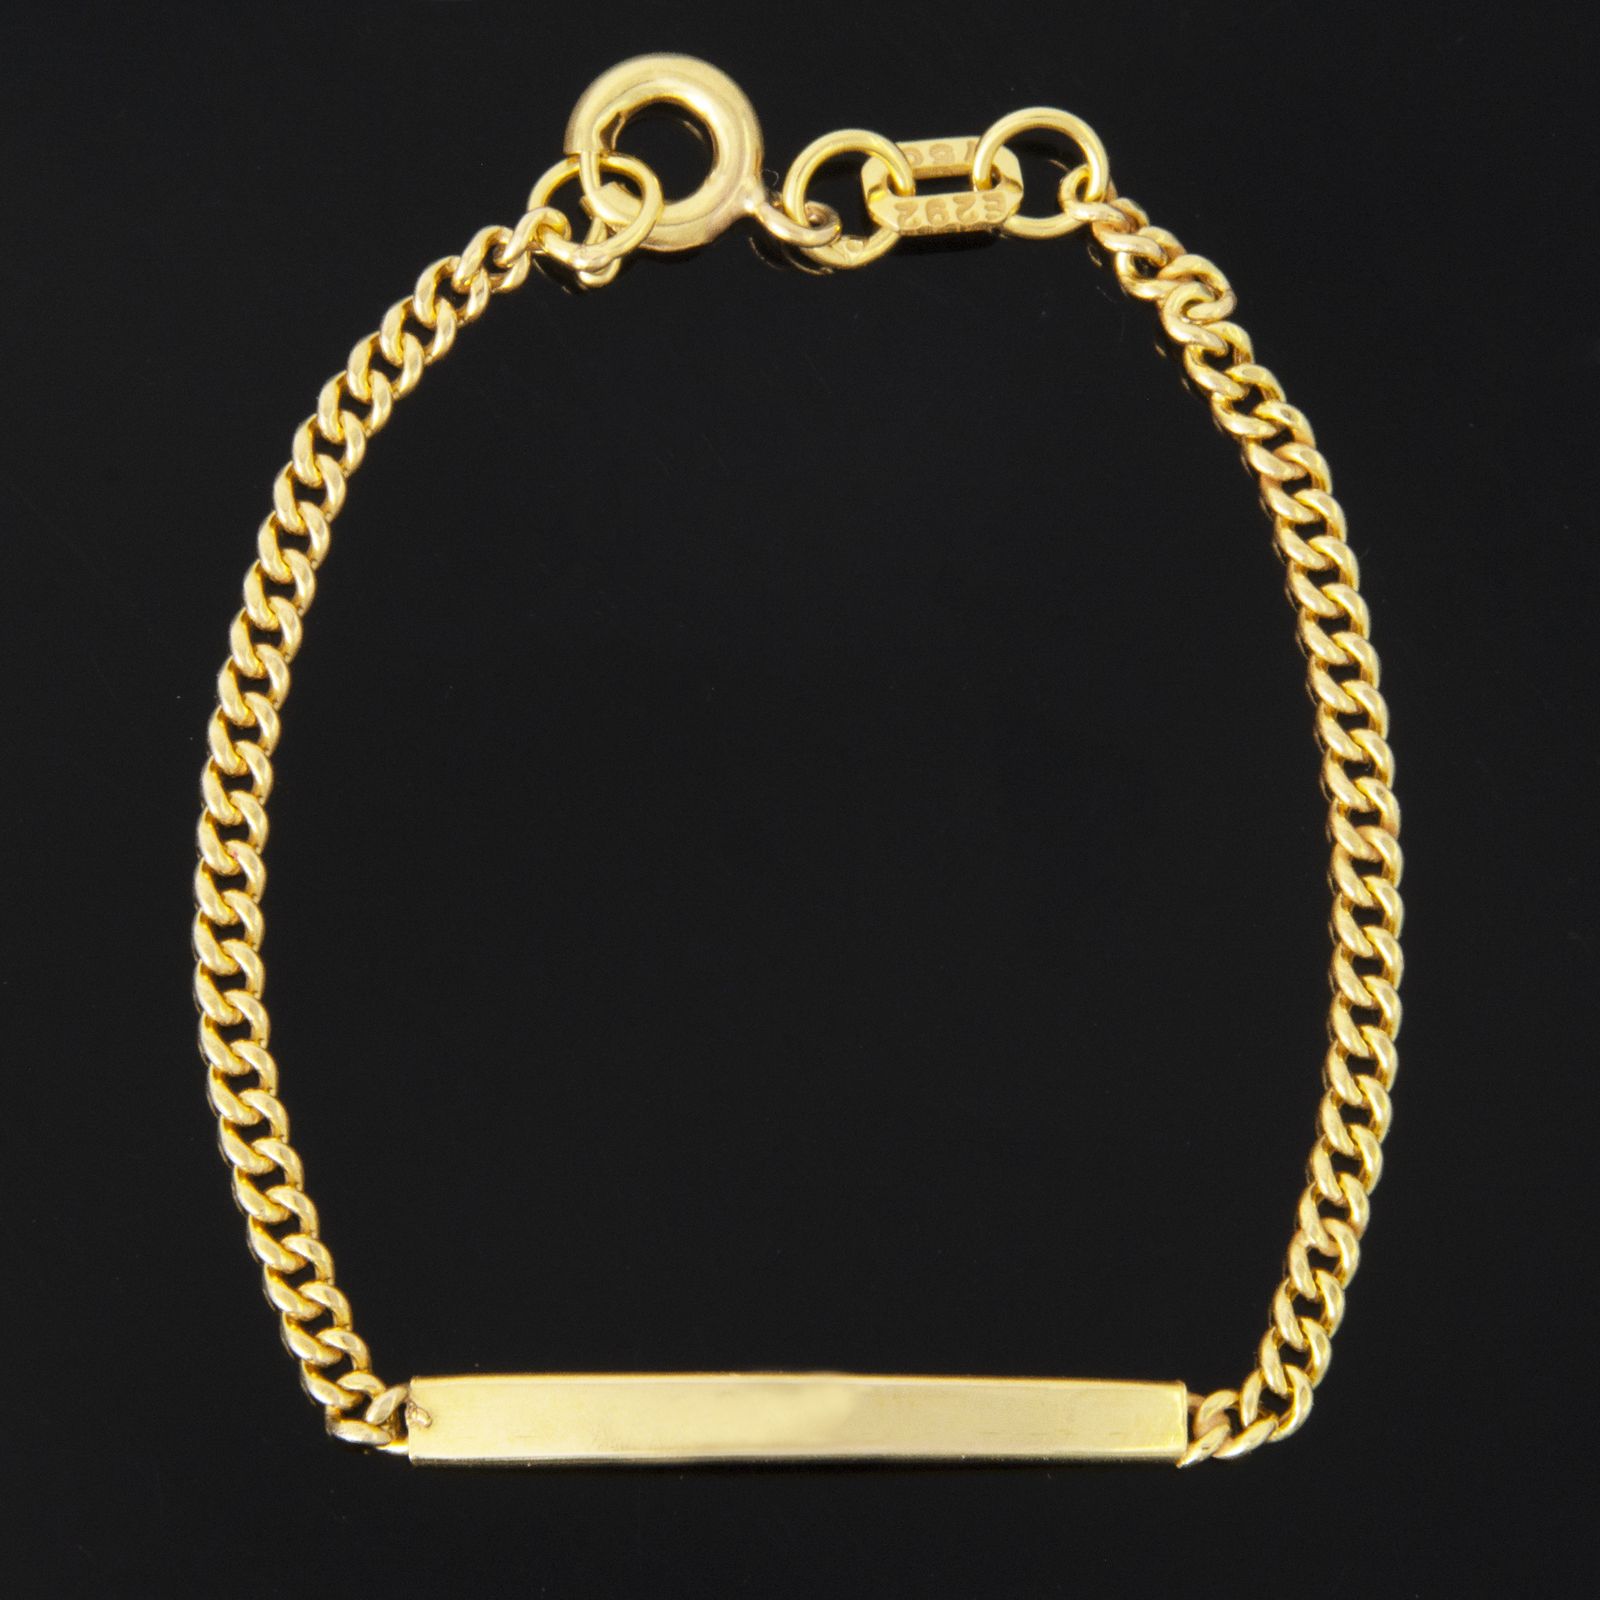  دستبند طلا 18 عیار دخترانه کد 67061 -  - 1